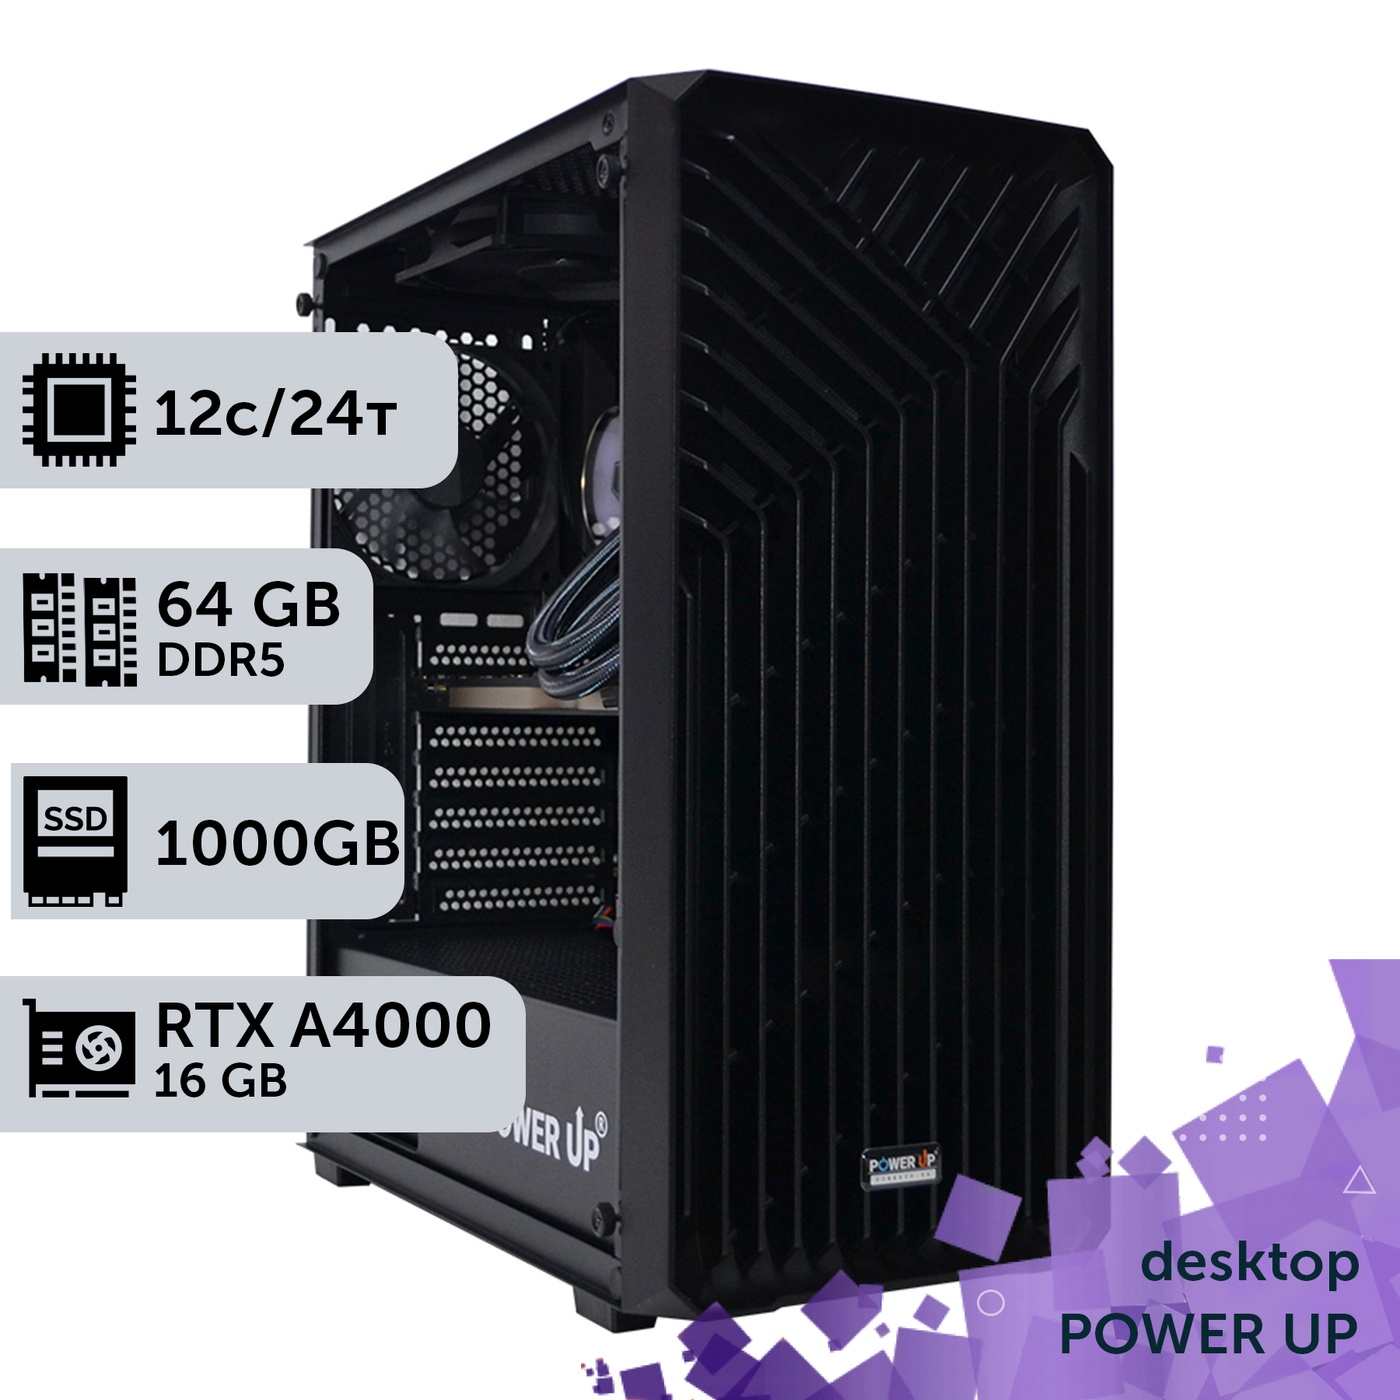 Робоча станція PowerUp Desktop #268 Ryzen 9 7900x/64 GB/SSD 1TB/NVIDIA Quadro RTX A4000 16GB